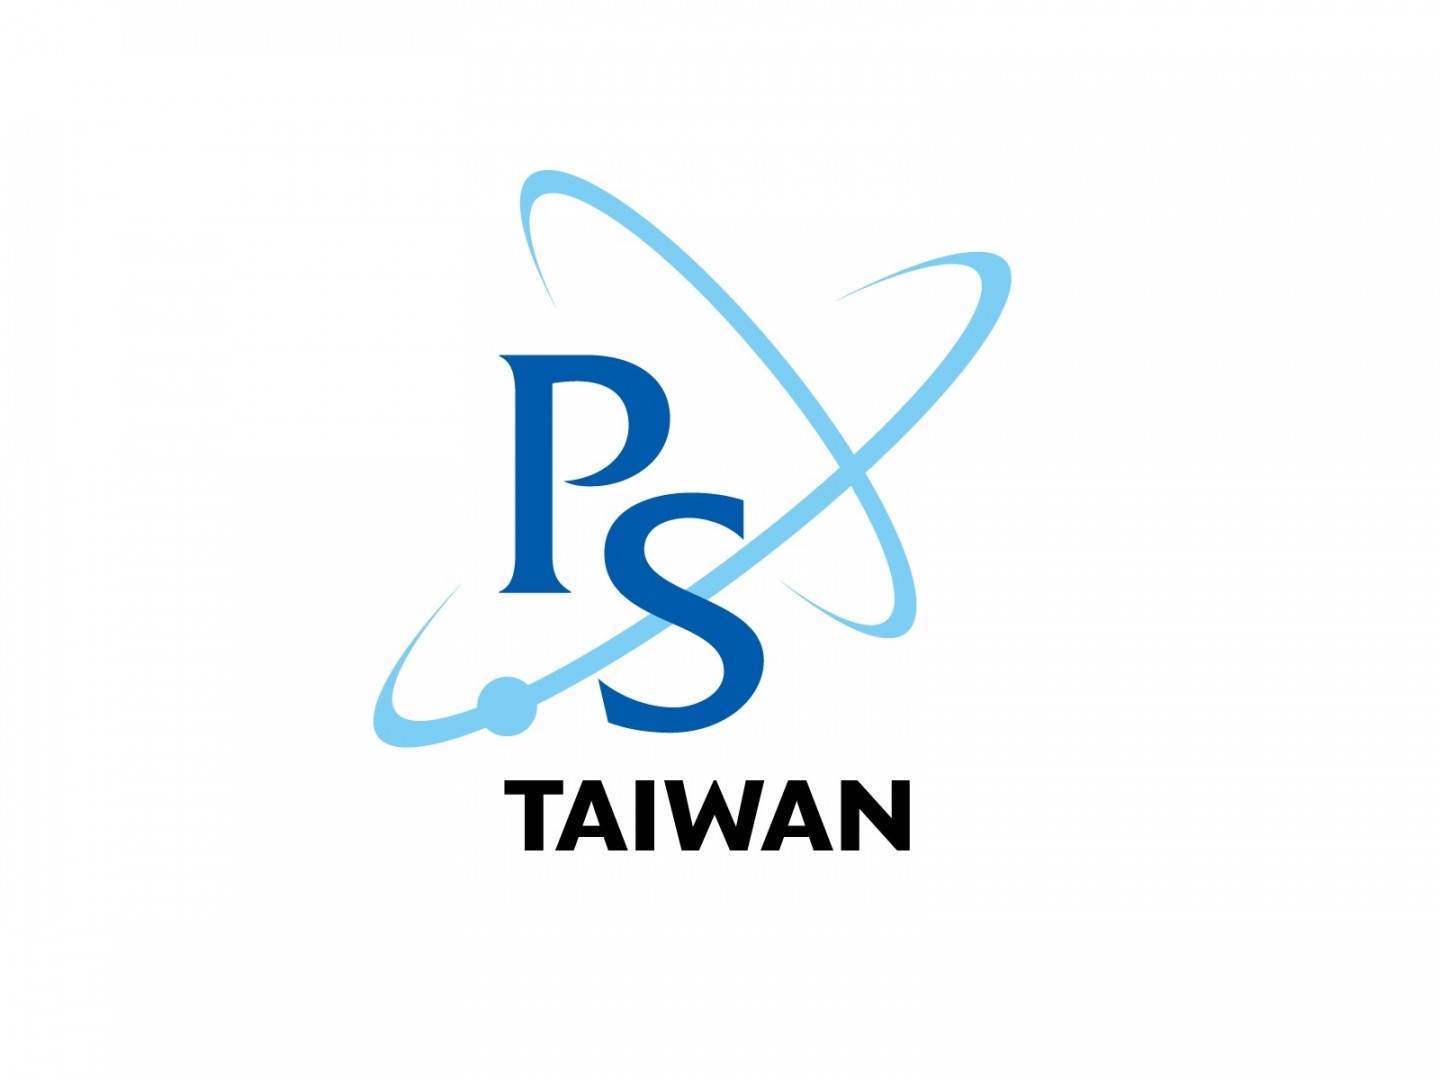  社團法人台灣物理學會-物理生物與生物物理學部  第一屆執行委員選舉通知函 